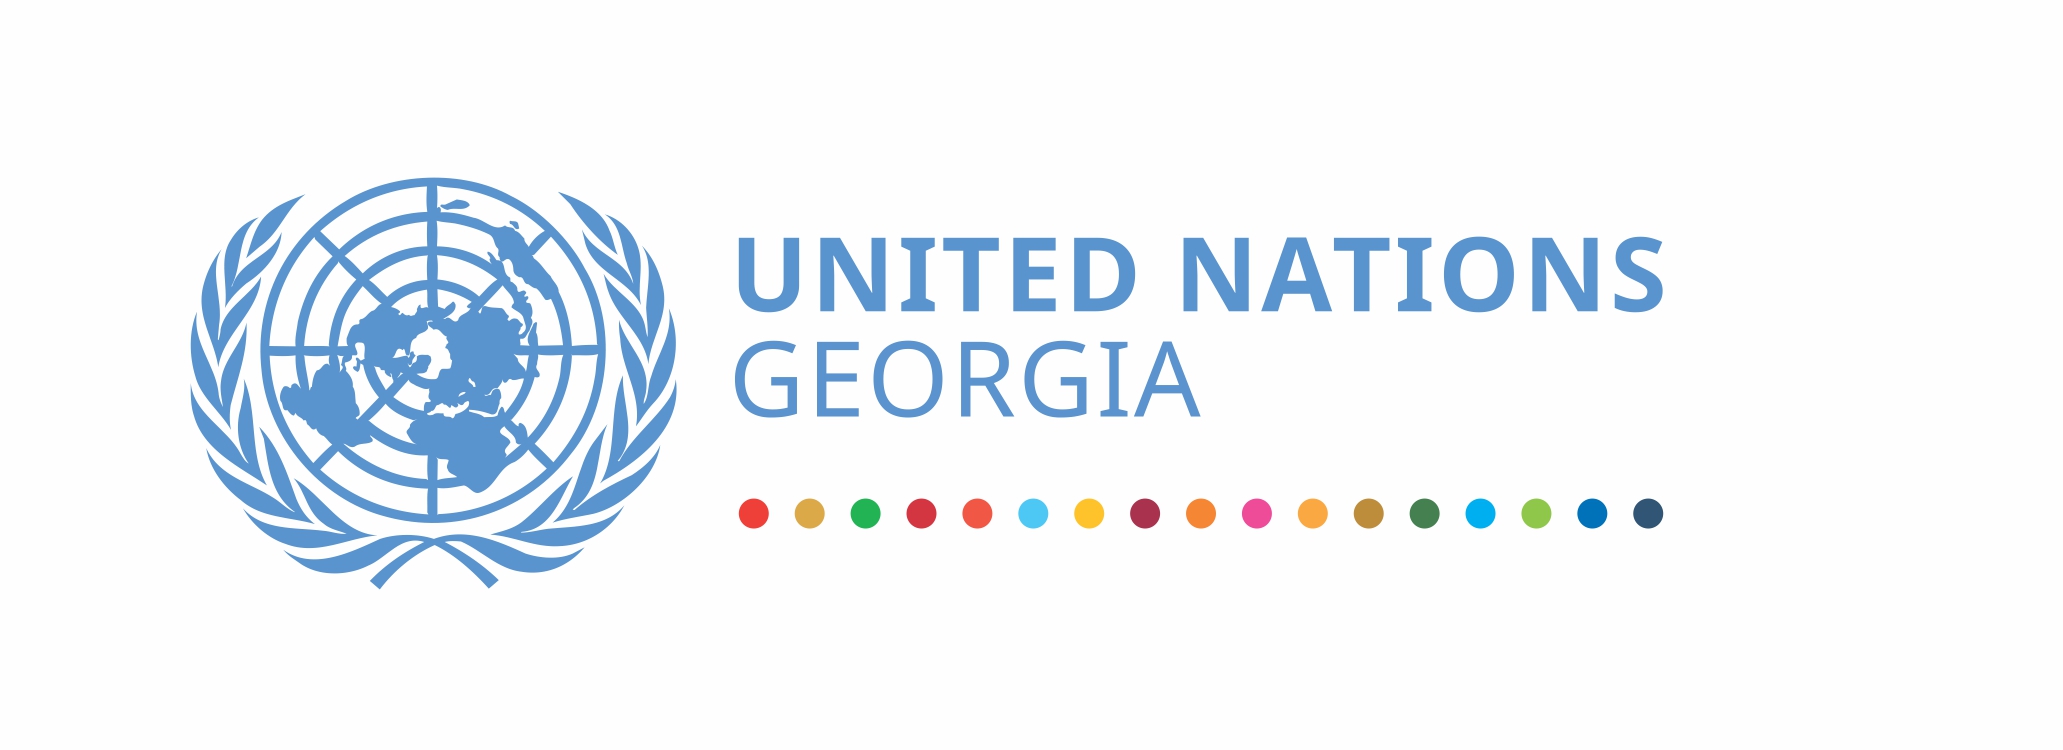 United Nations Georgia